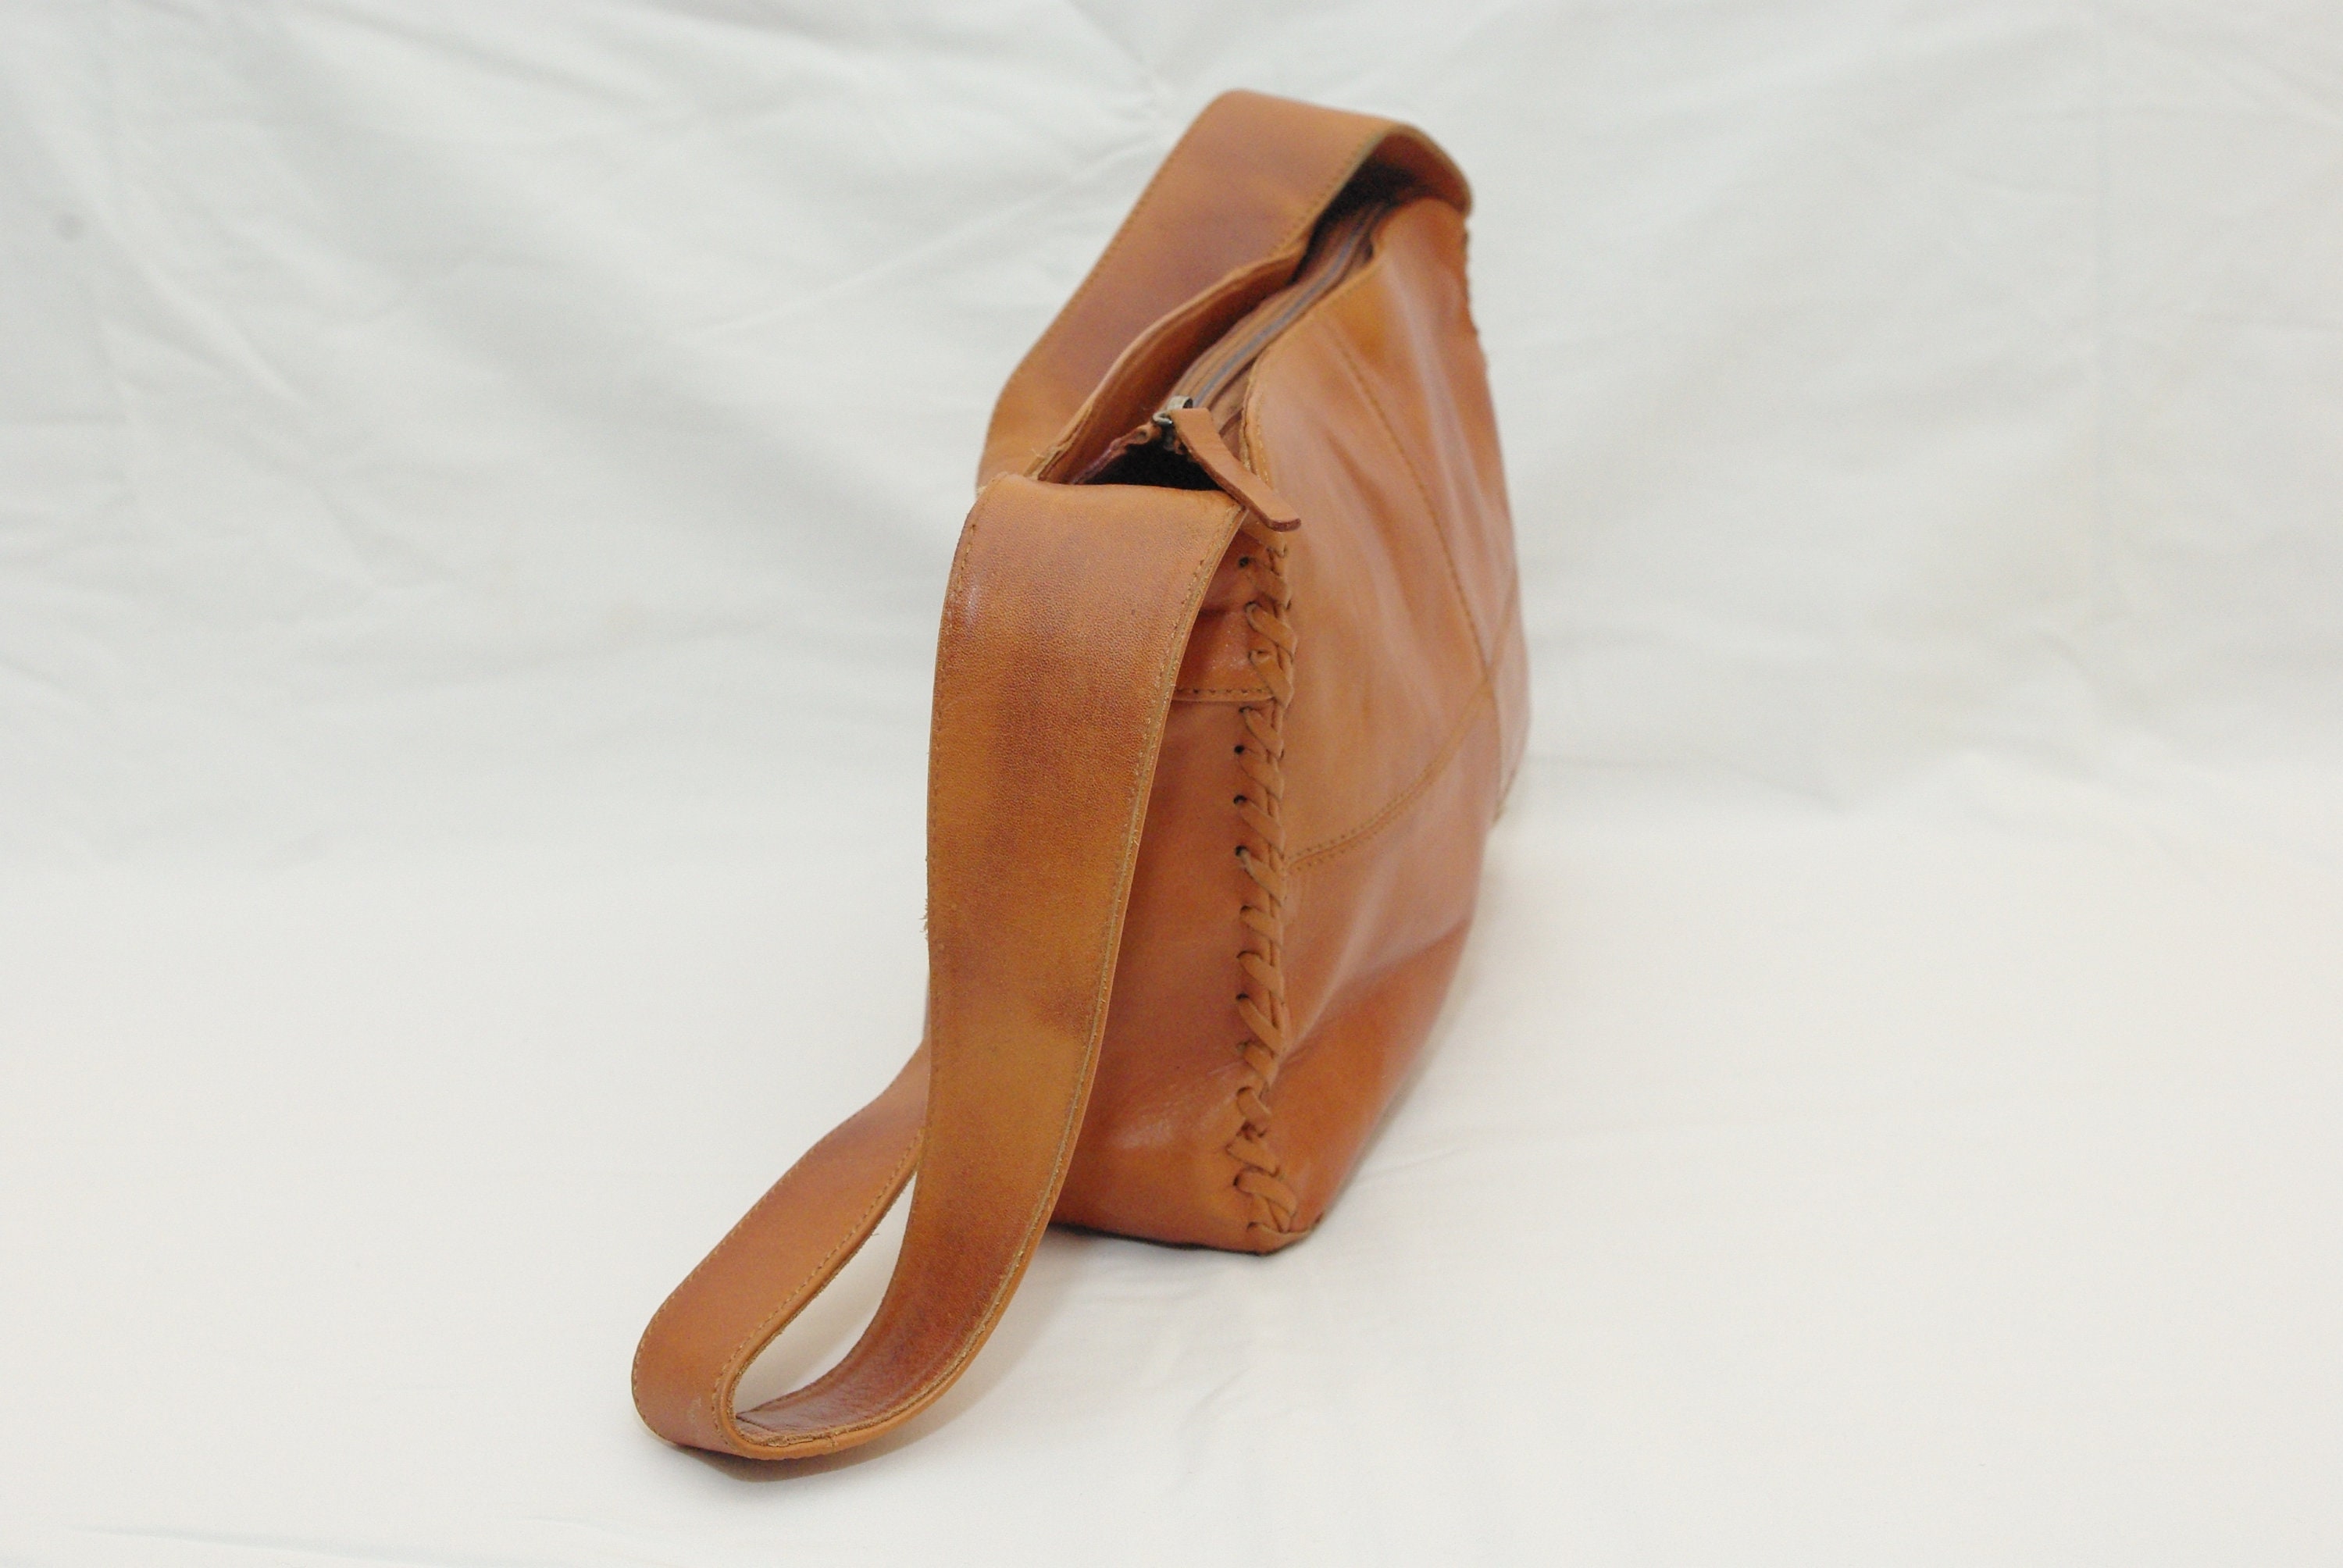 Waarneembaar erotisch enkel Vintage Brown the Pikolinos Bag/classic Leather Vintage - Etsy UK